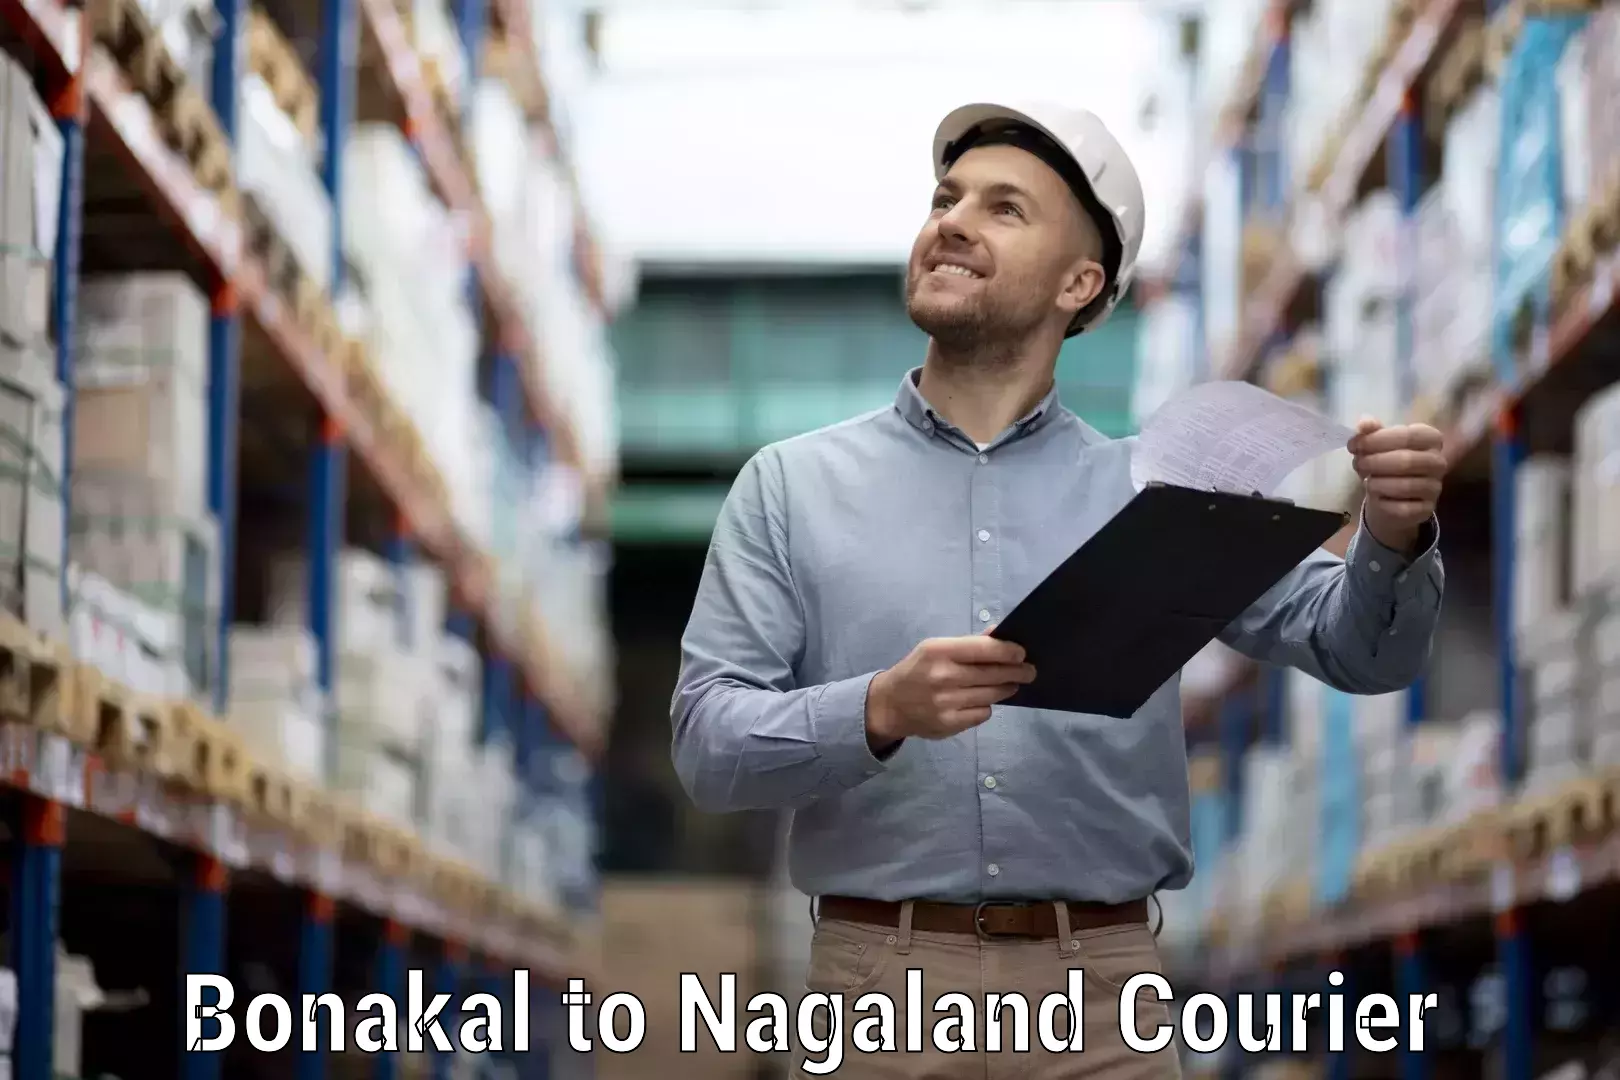 Automated shipping processes Bonakal to NIT Nagaland